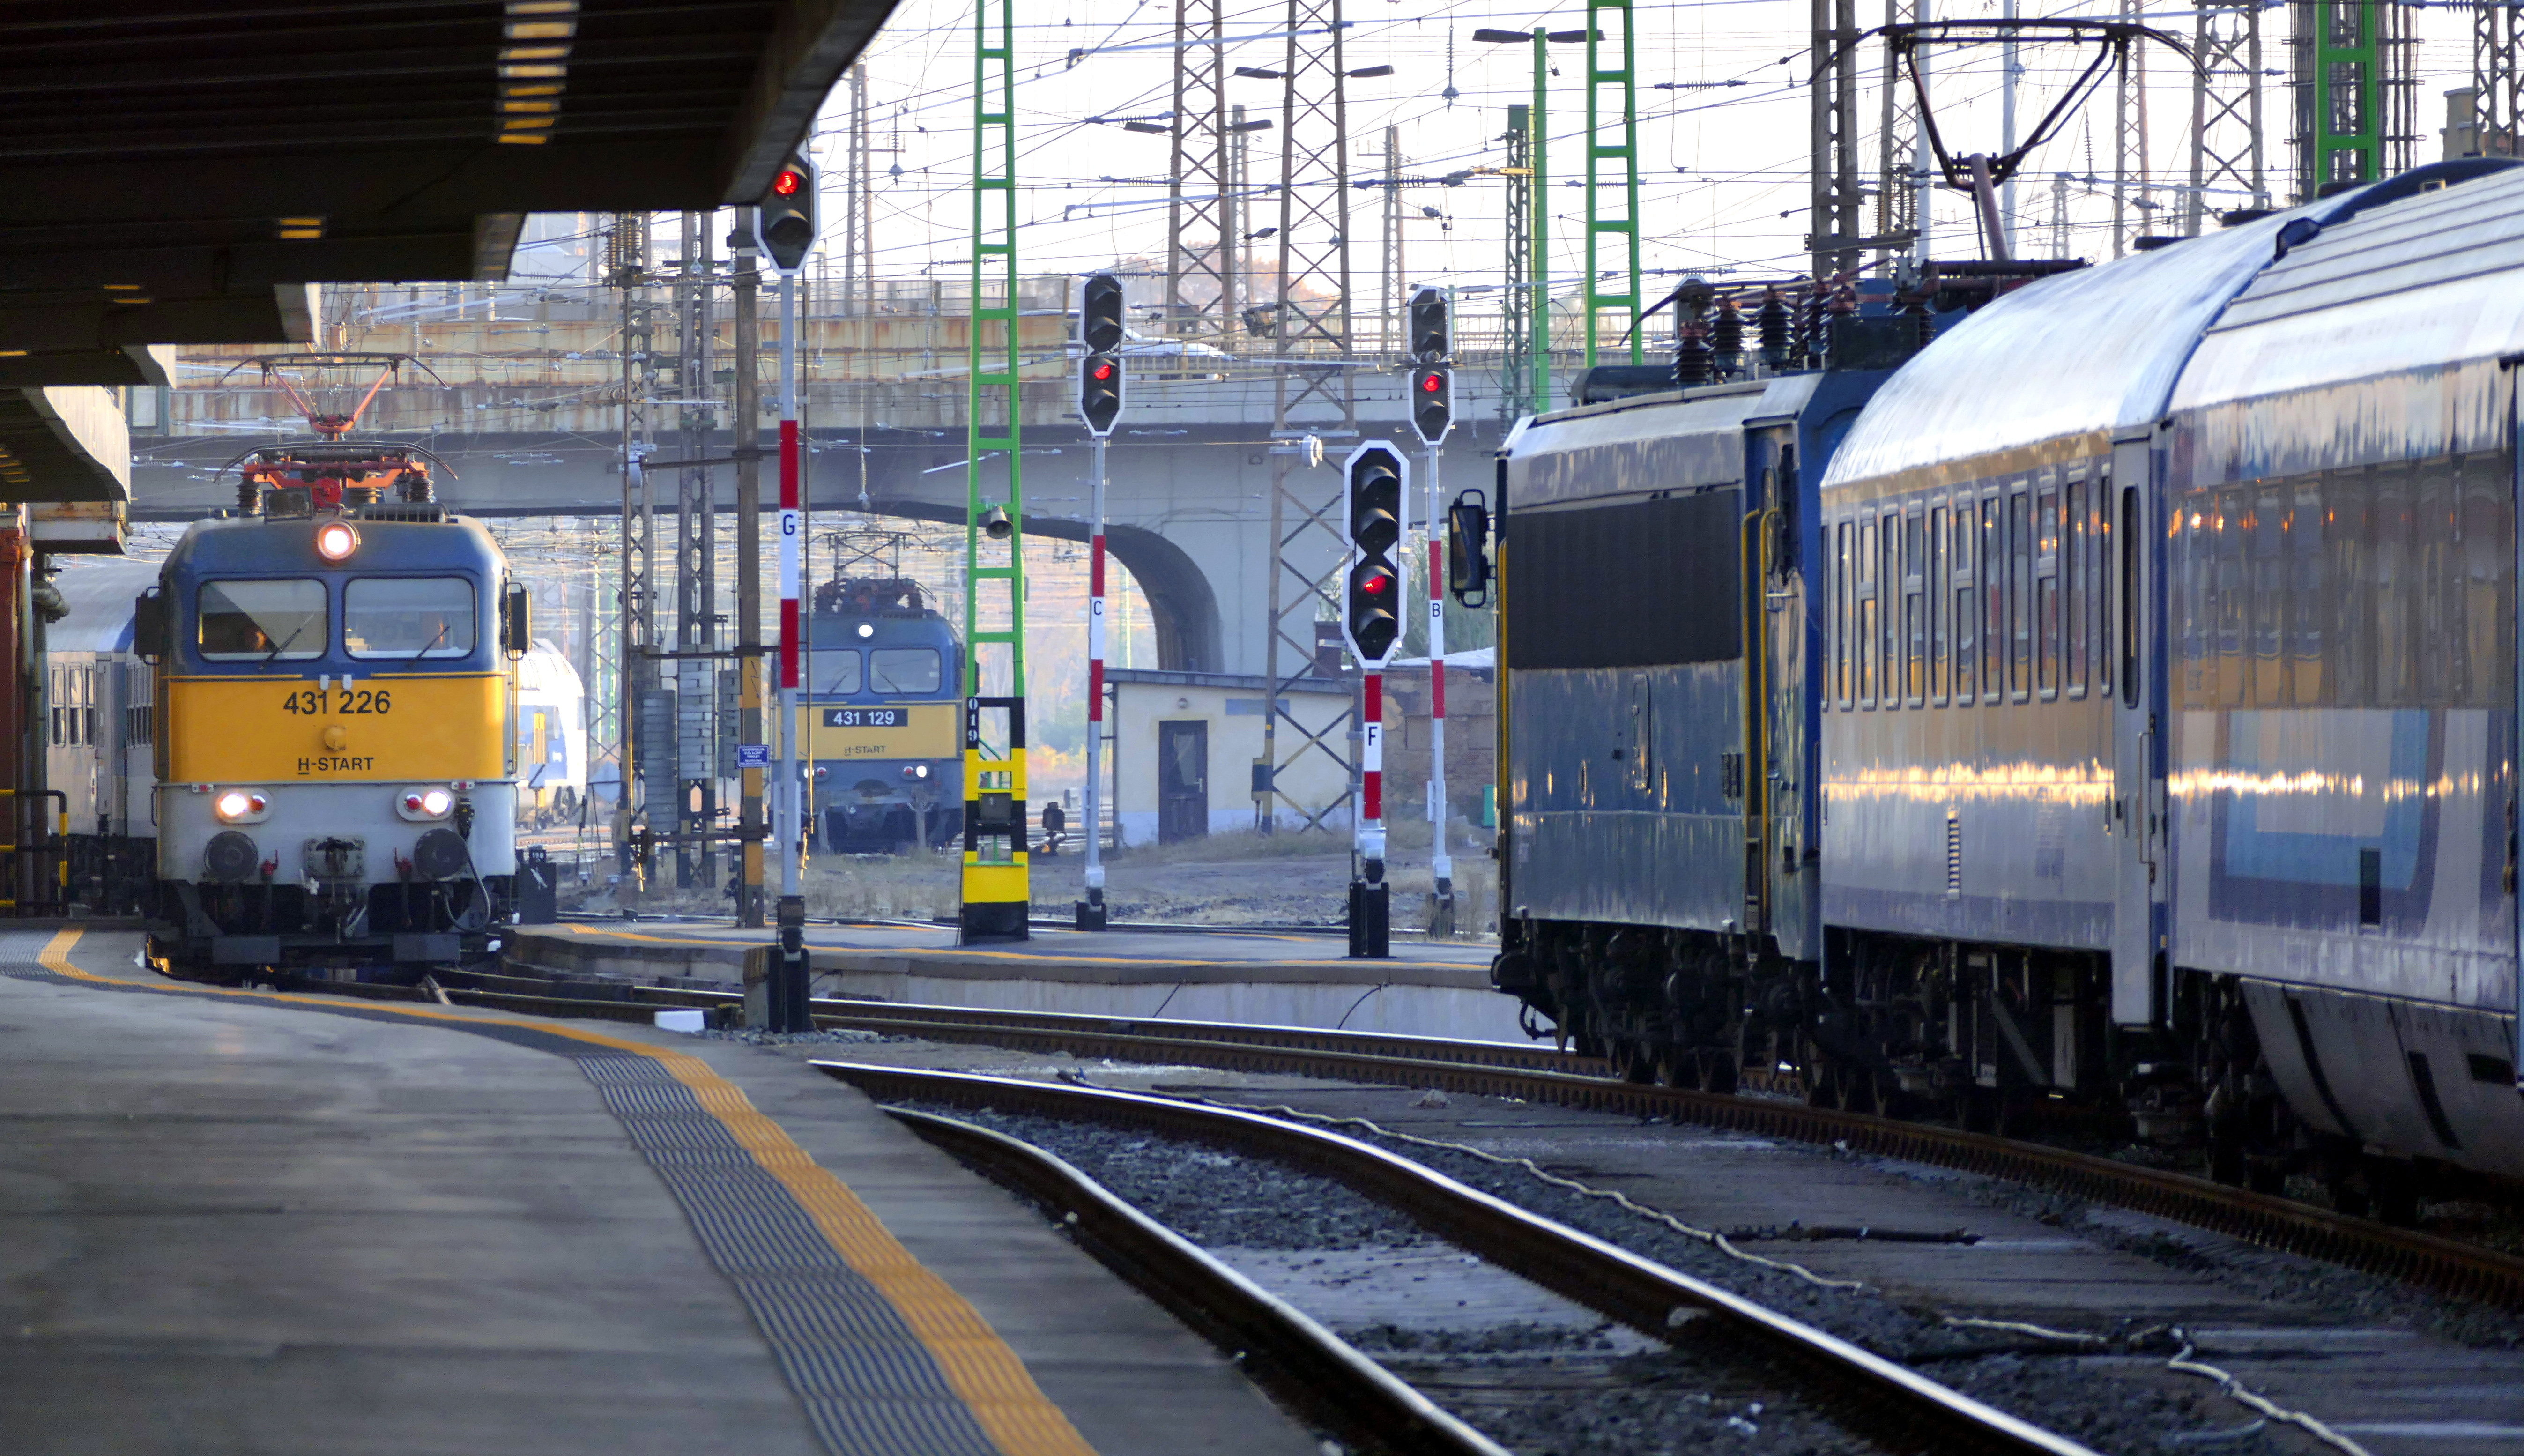 Provokátorok tartják rettegésben az utasokat néhány Debrecen környéki vonaton